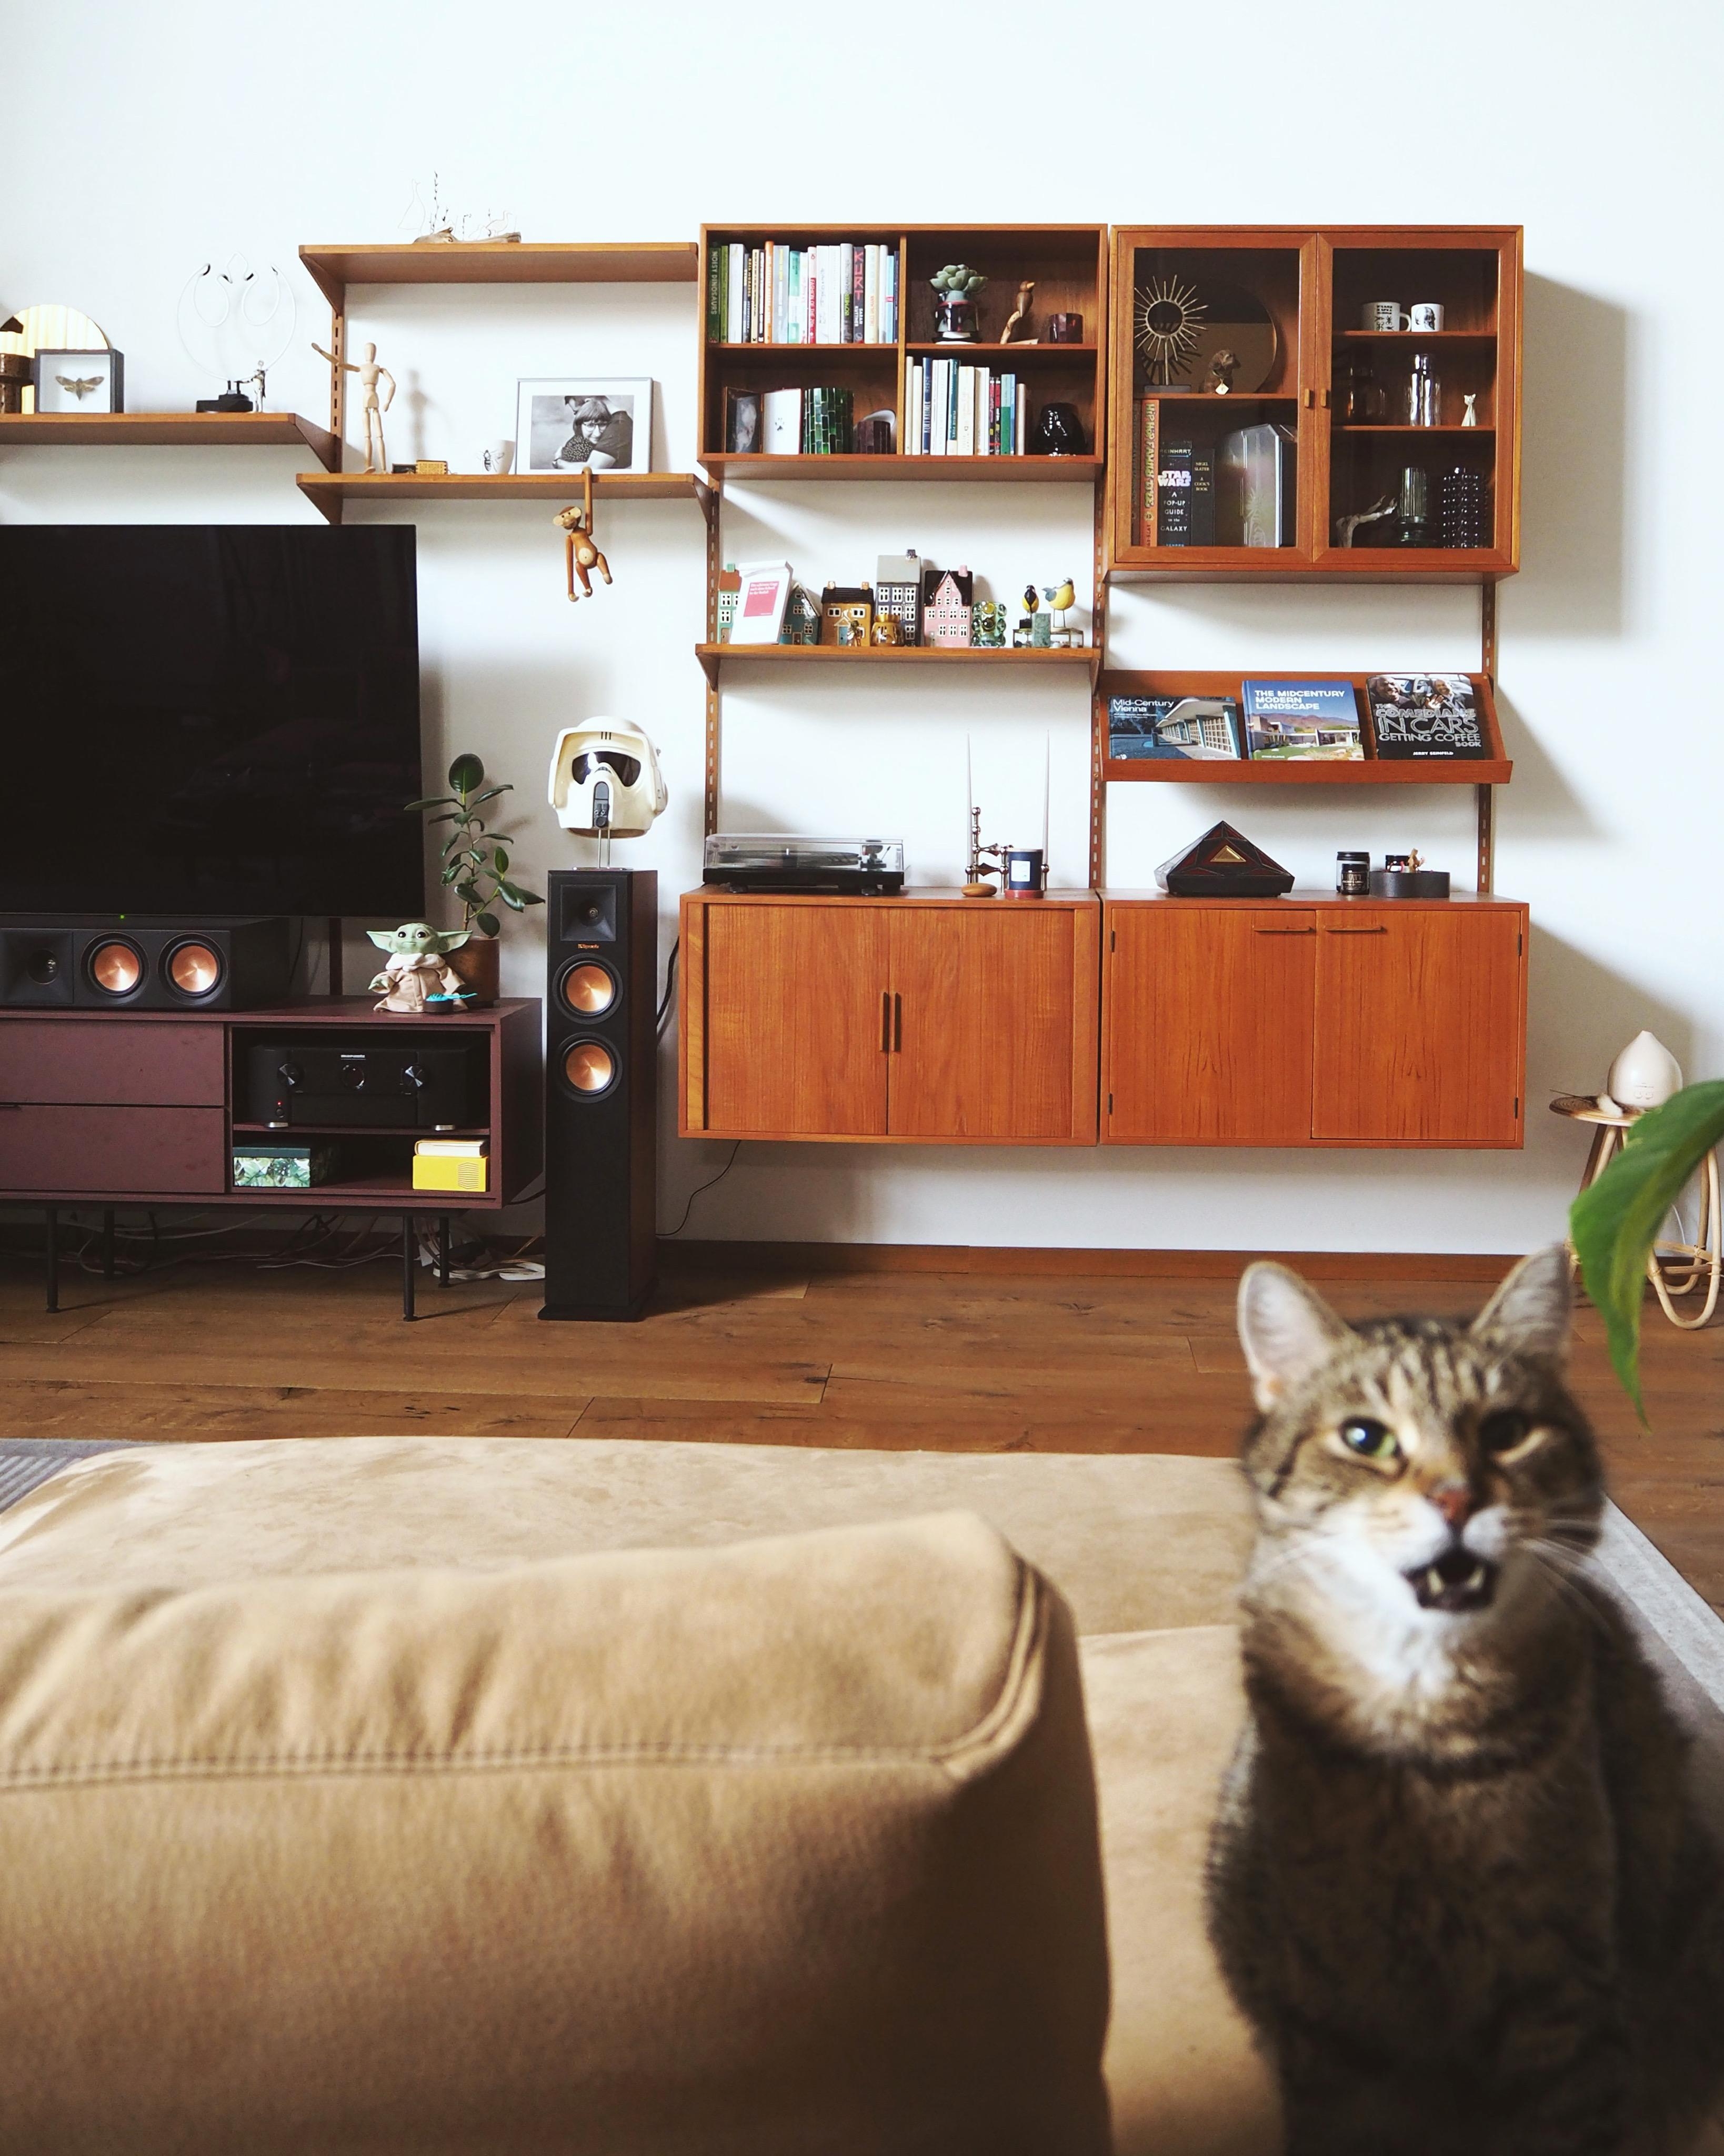 Meow! #livingroom #wohnzimmer #couchstyle #midcentury #kaikristiansen